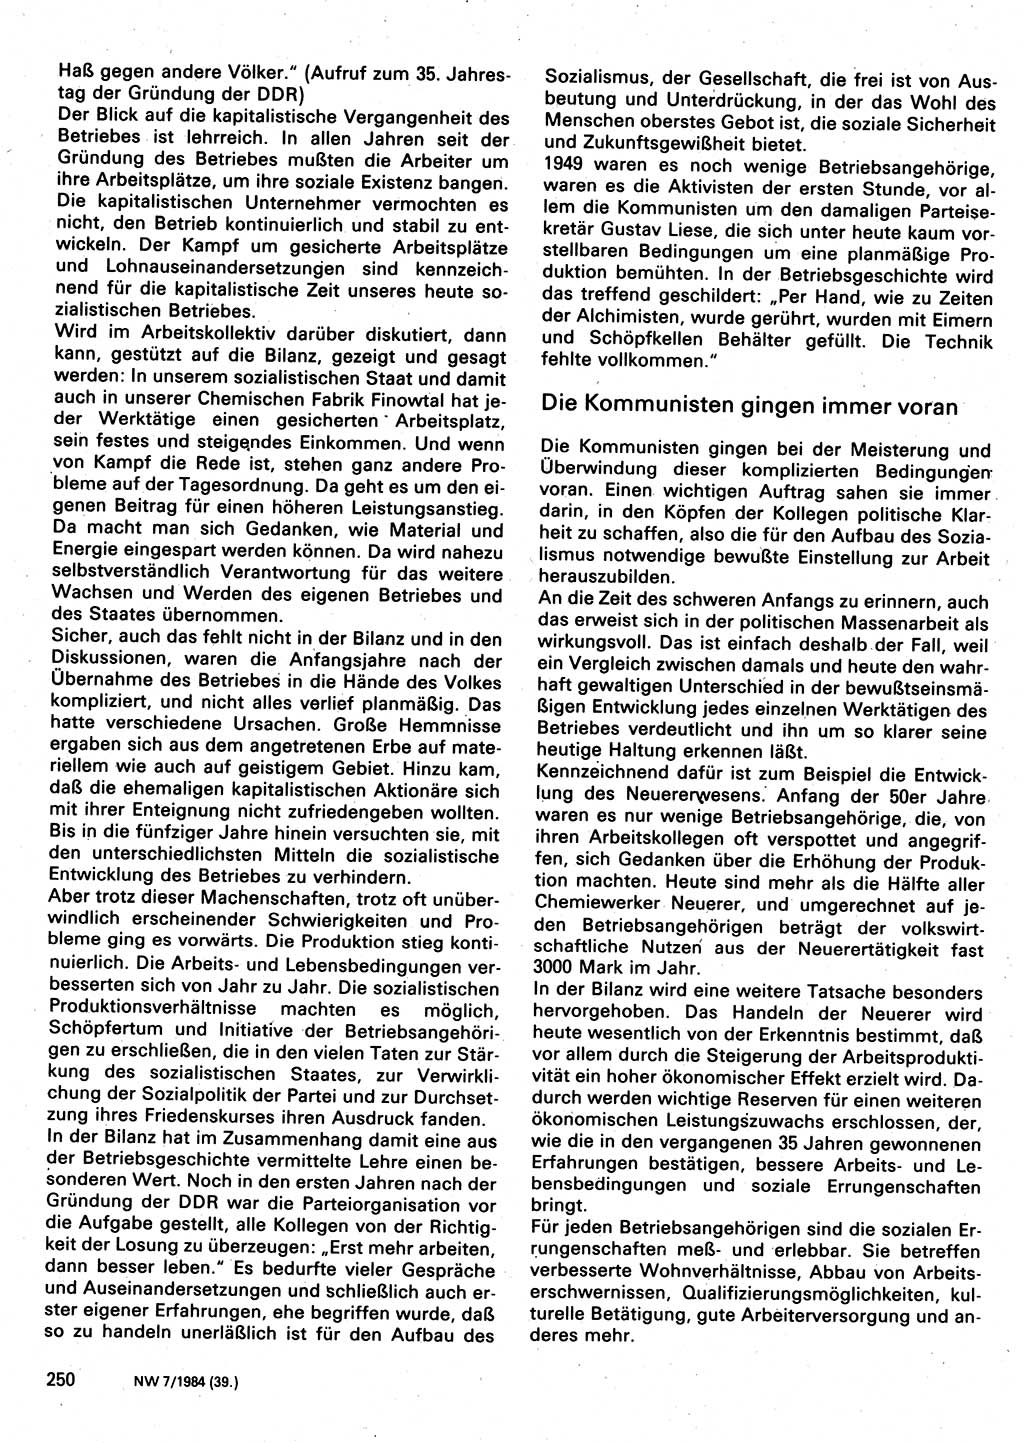 Neuer Weg (NW), Organ des Zentralkomitees (ZK) der SED (Sozialistische Einheitspartei Deutschlands) für Fragen des Parteilebens, 39. Jahrgang [Deutsche Demokratische Republik (DDR)] 1984, Seite 250 (NW ZK SED DDR 1984, S. 250)